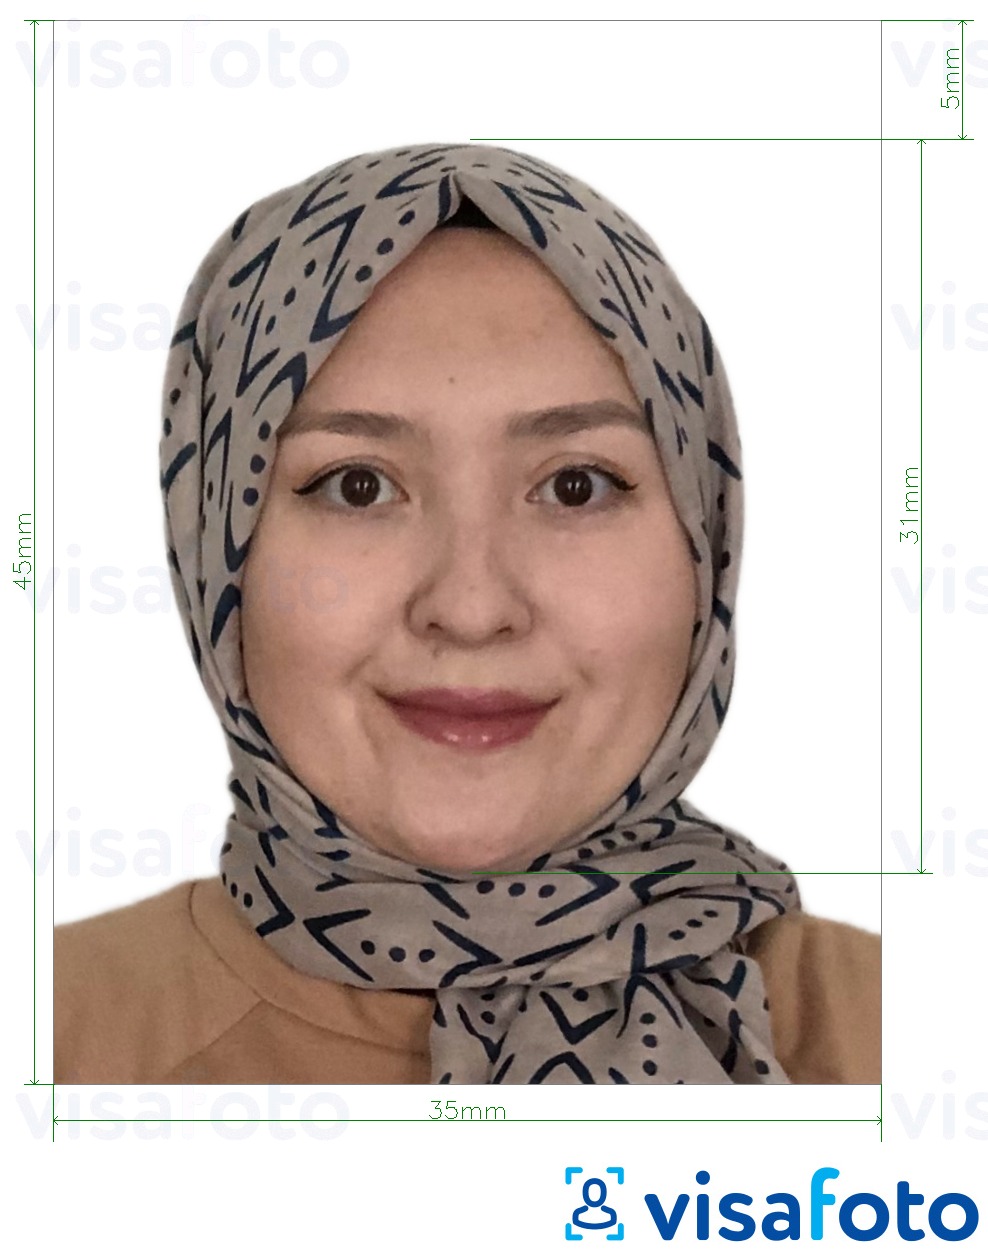 Contoh dari foto untuk Malaysia Visa 35x45 mm latar belakang putih dengan ukuran spesifikasi yang tepat